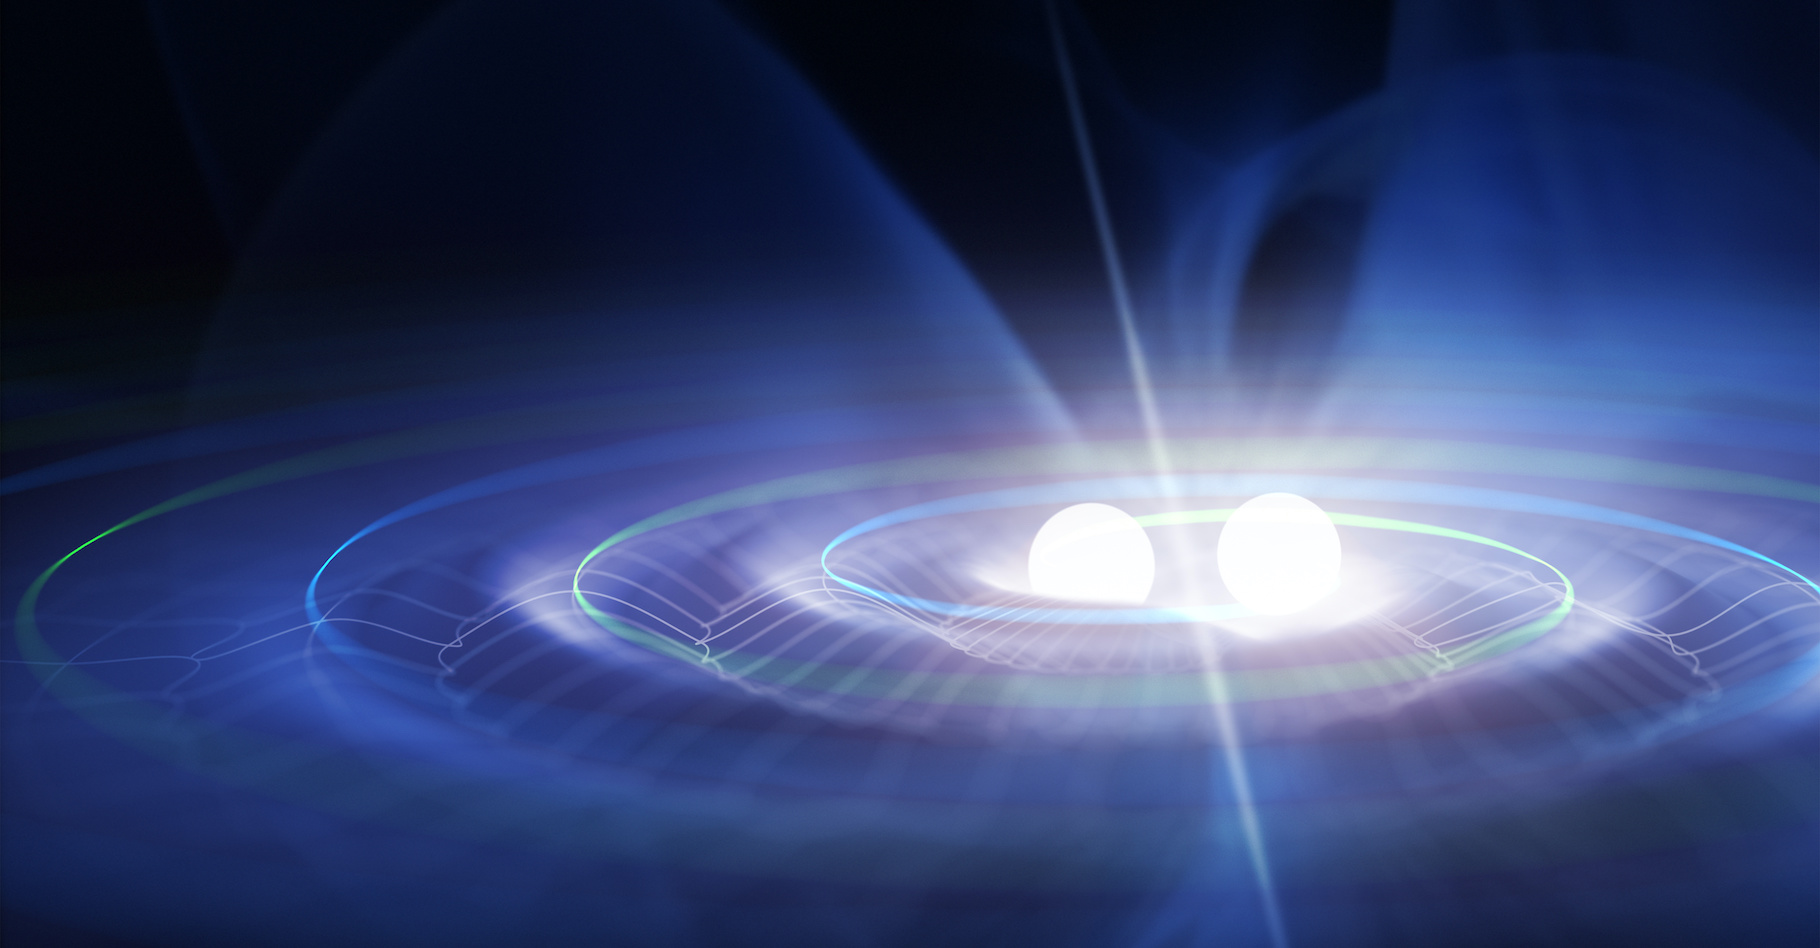 Avec l’amélioration des instruments, les détections d’ondes gravitationnelles créées par des collisions de trous noirs ou d’étoiles à neutrons se multiplient. © Petrovich12, Adobe Stock